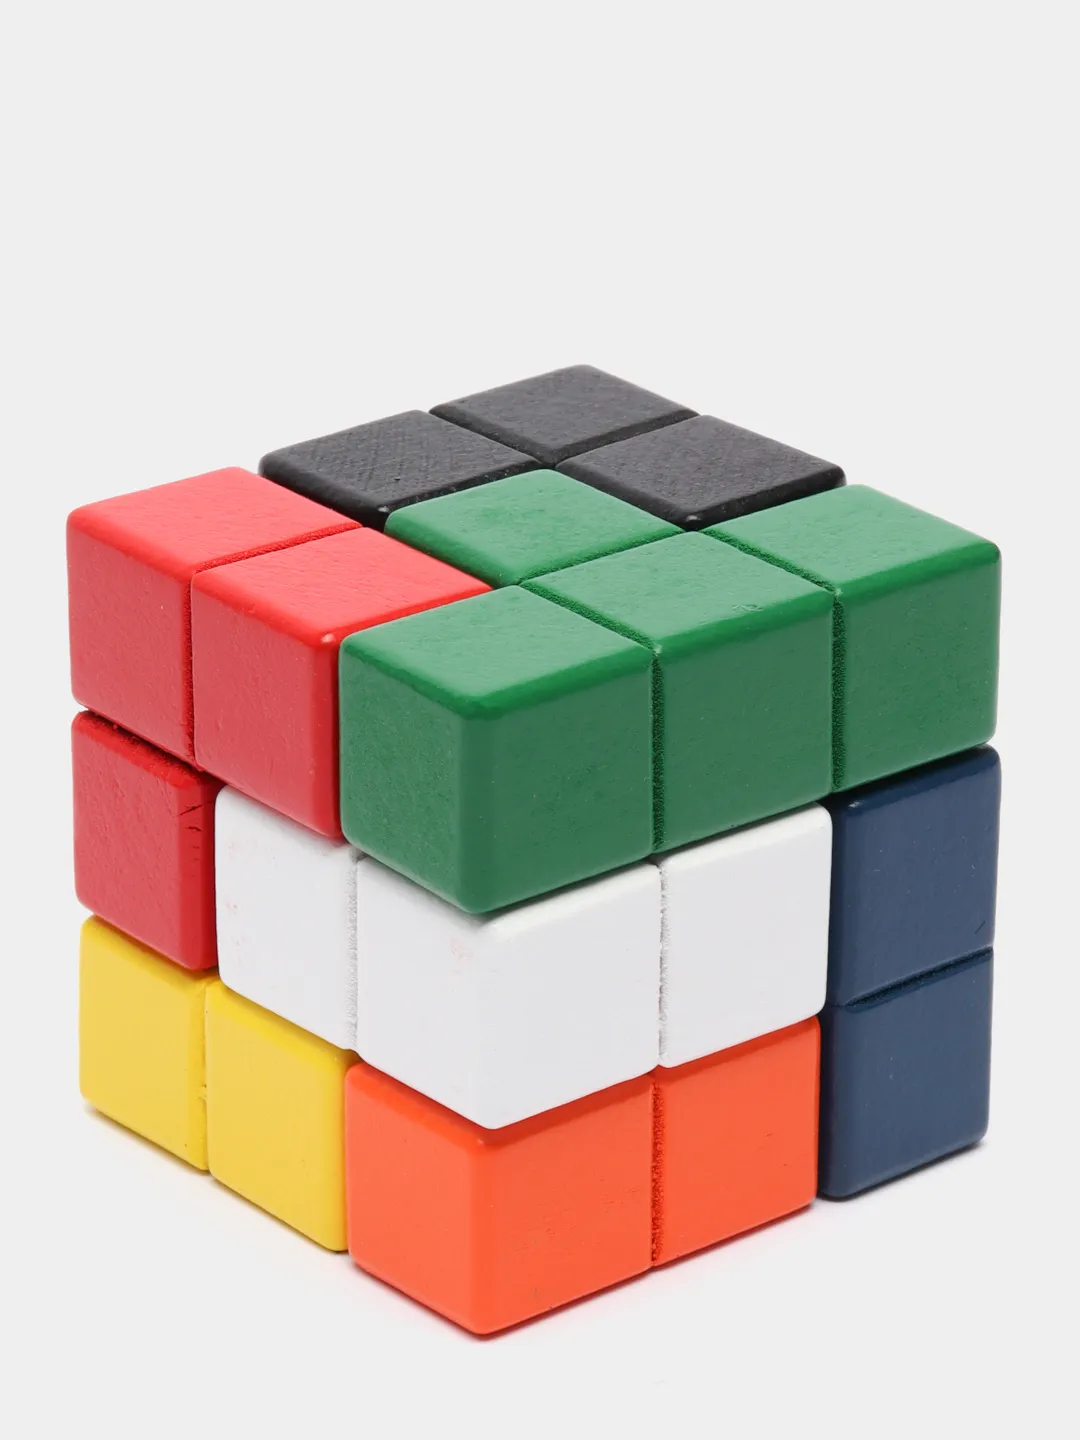 Деревянный кубик Рубика 3х3